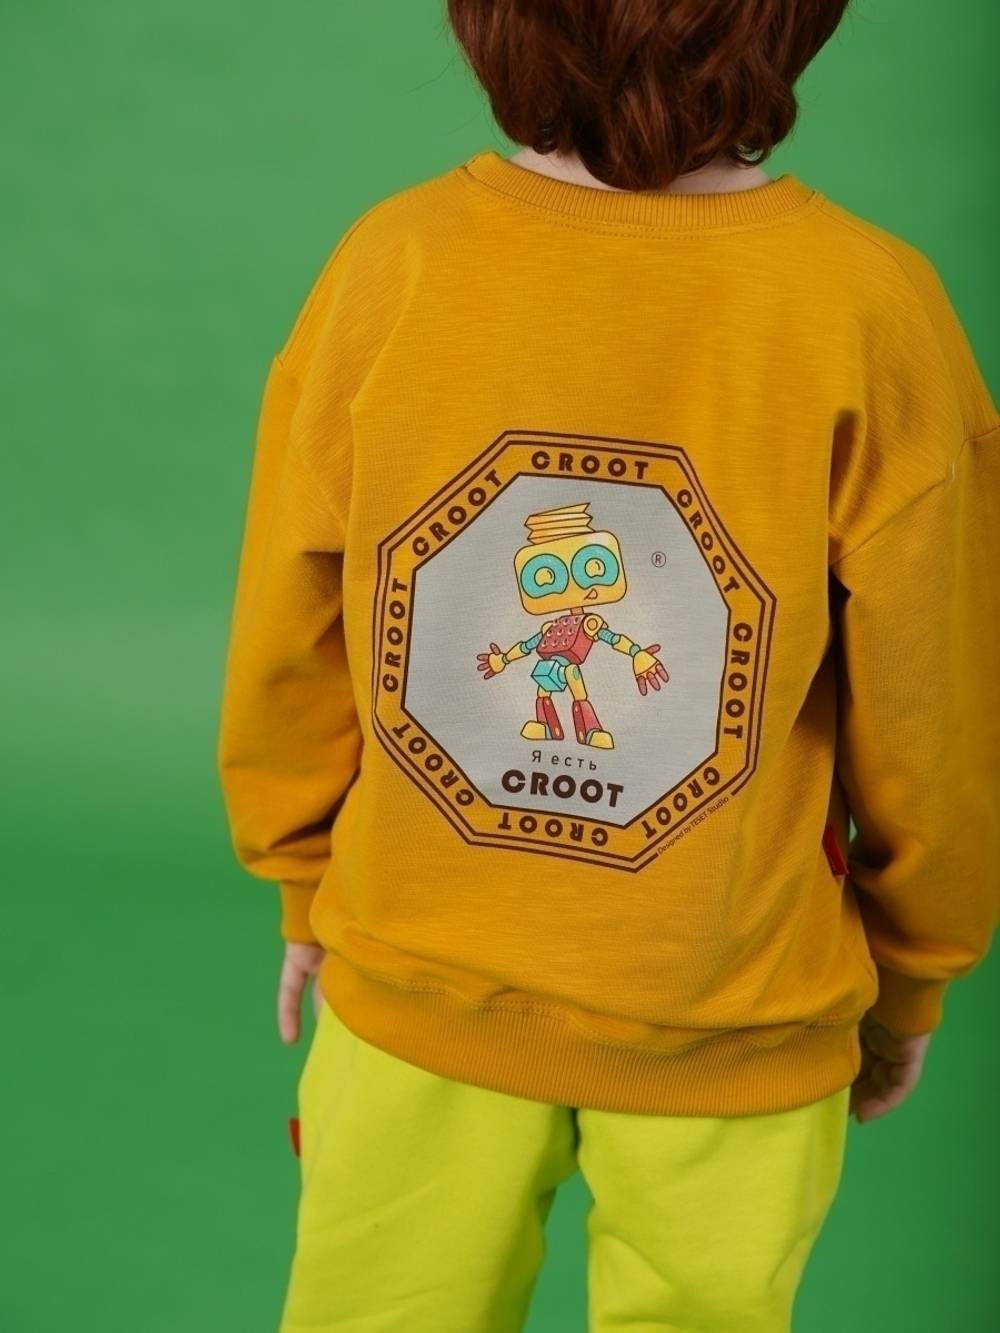 Свитшот " Робот Croot" для мальчика(цвет манго)